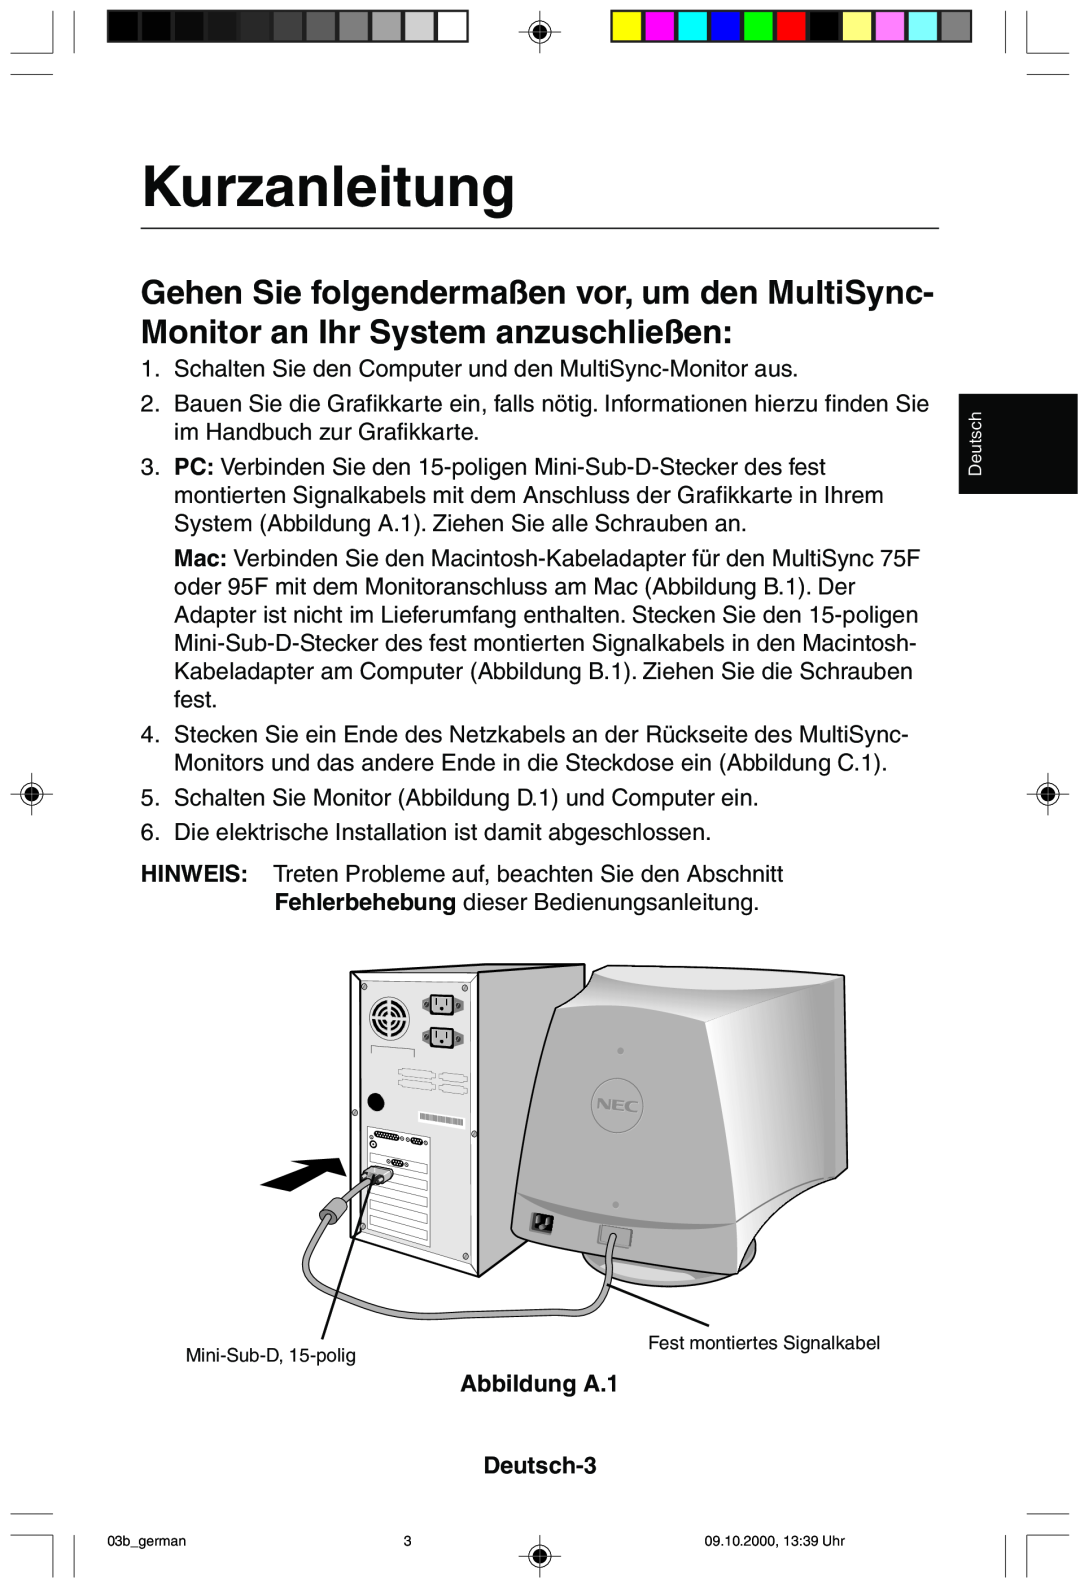 NEC 95F user manual Kurzanleitung, Abbildung A.1 Deutsch-3 